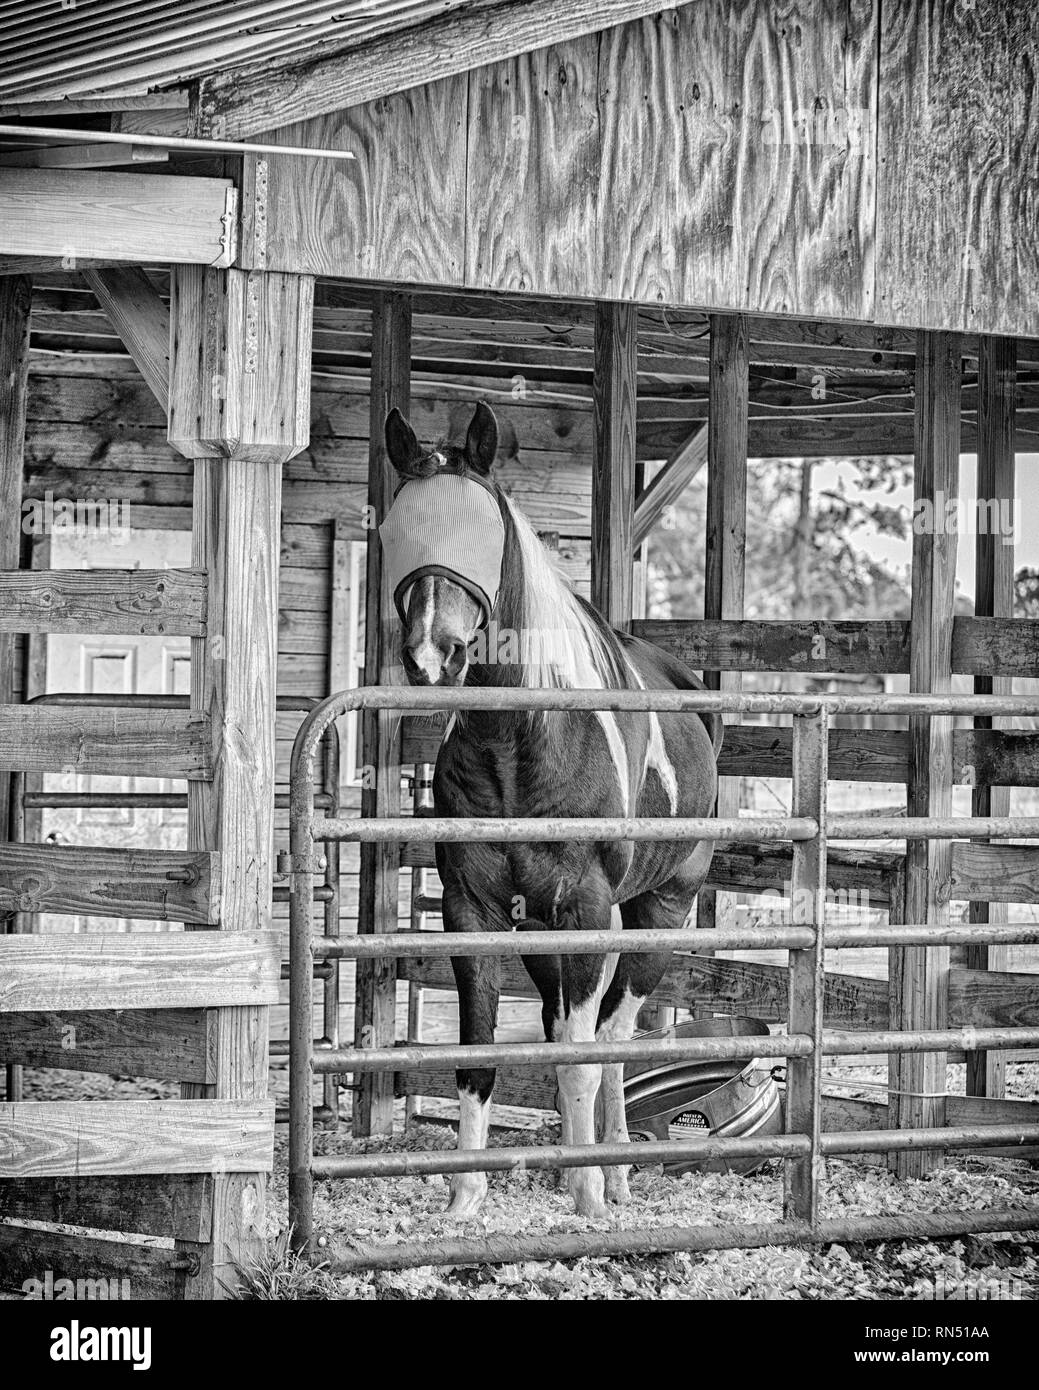 Image en noir et blanc d'un paint horse dans une étable à l'appareil photo. Il a un masque pour protéger les yeux. Il est alerte, les oreilles en avant. Banque D'Images